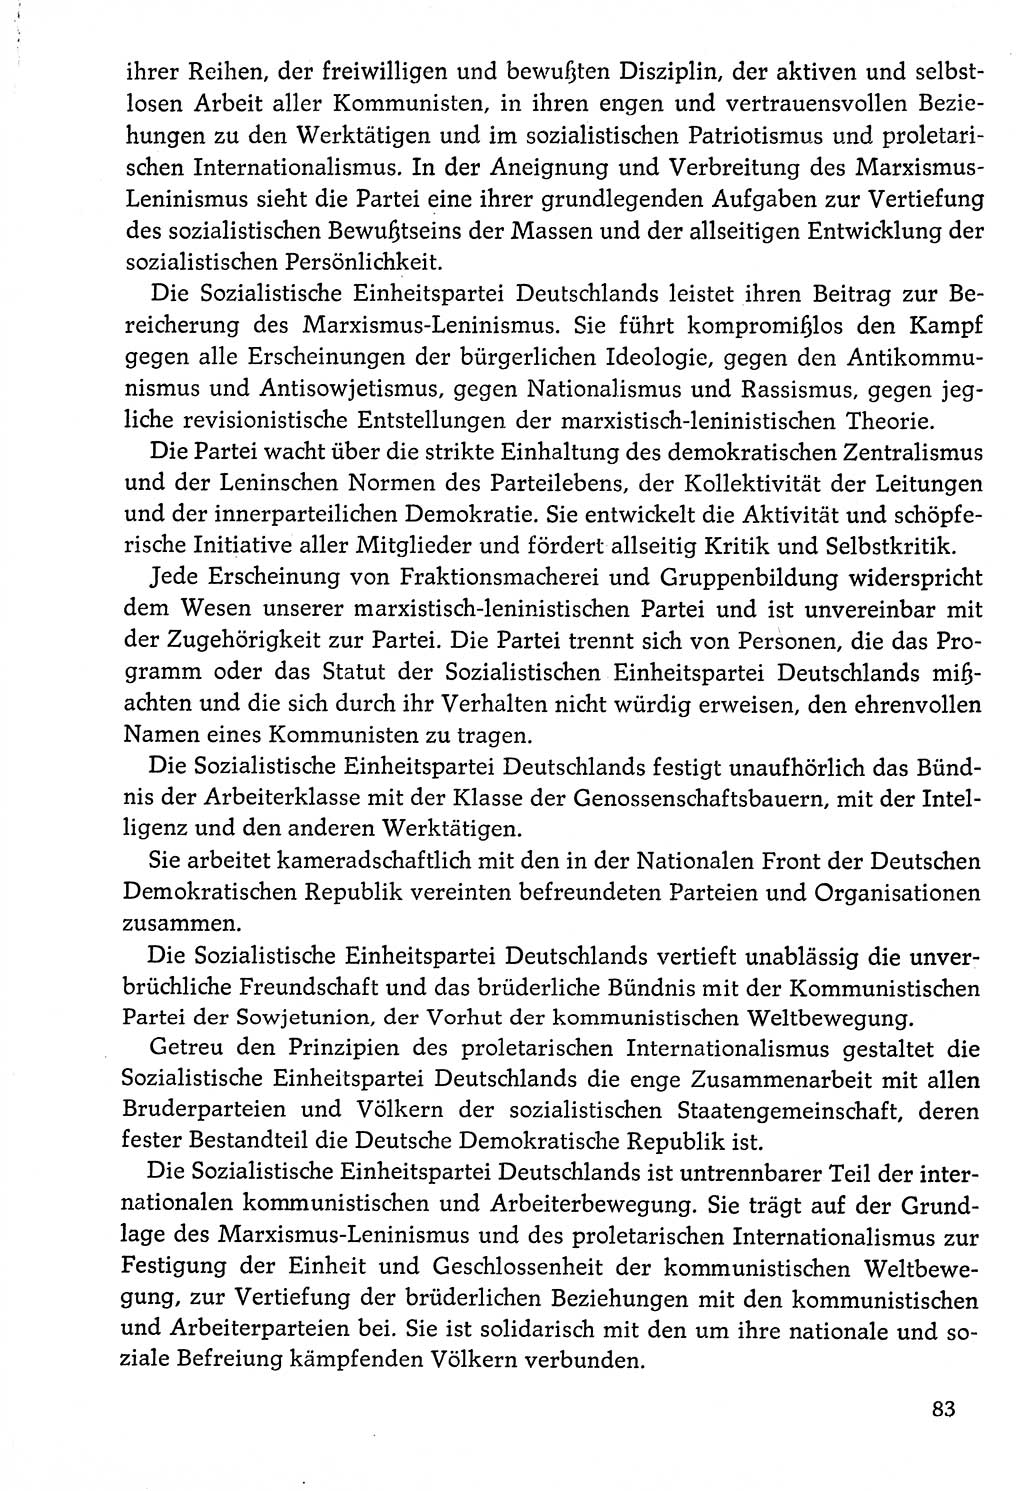 Dokumente der Sozialistischen Einheitspartei Deutschlands (SED) [Deutsche Demokratische Republik (DDR)] 1976-1977, Seite 83 (Dok. SED DDR 1976-1977, S. 83)